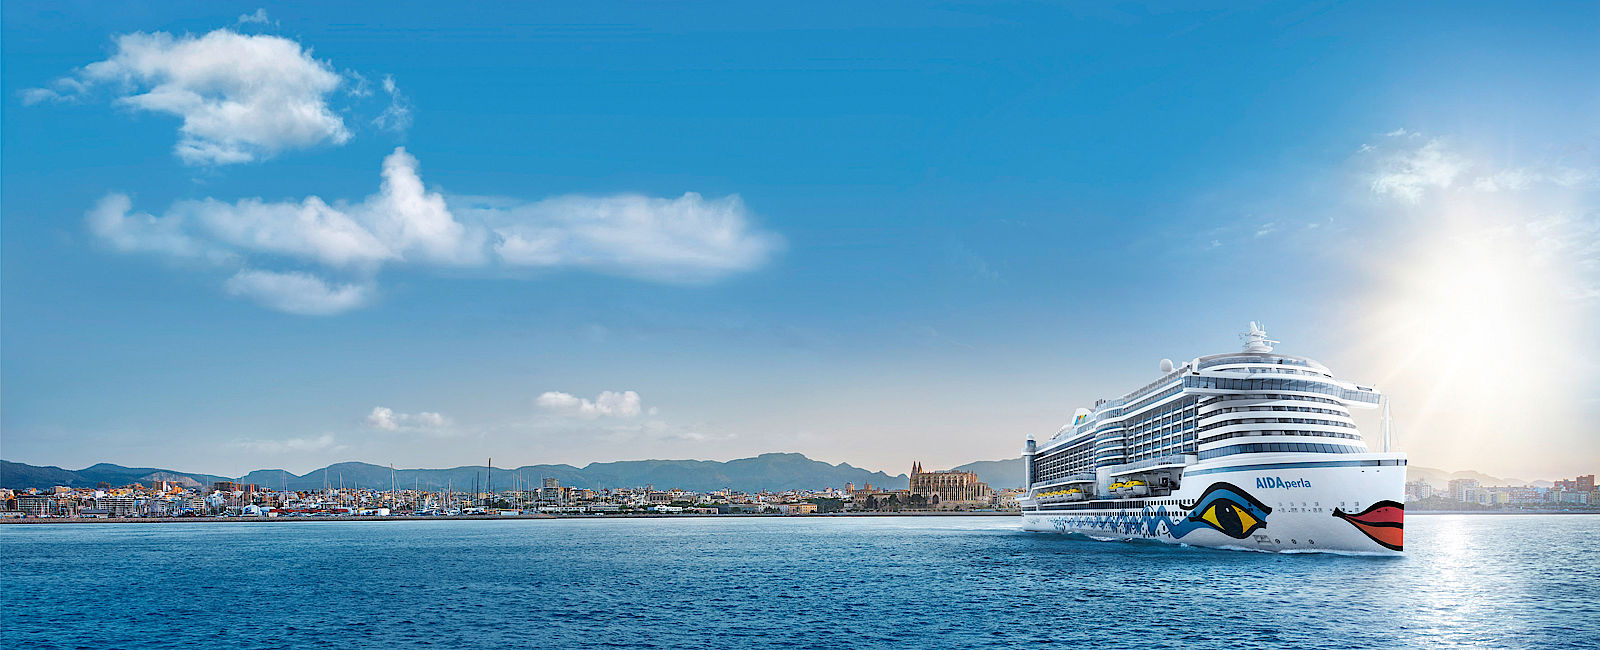 KREUZFAHRT NEWS
 Neue Welcome-Cruises auf der Aida Perla! 
